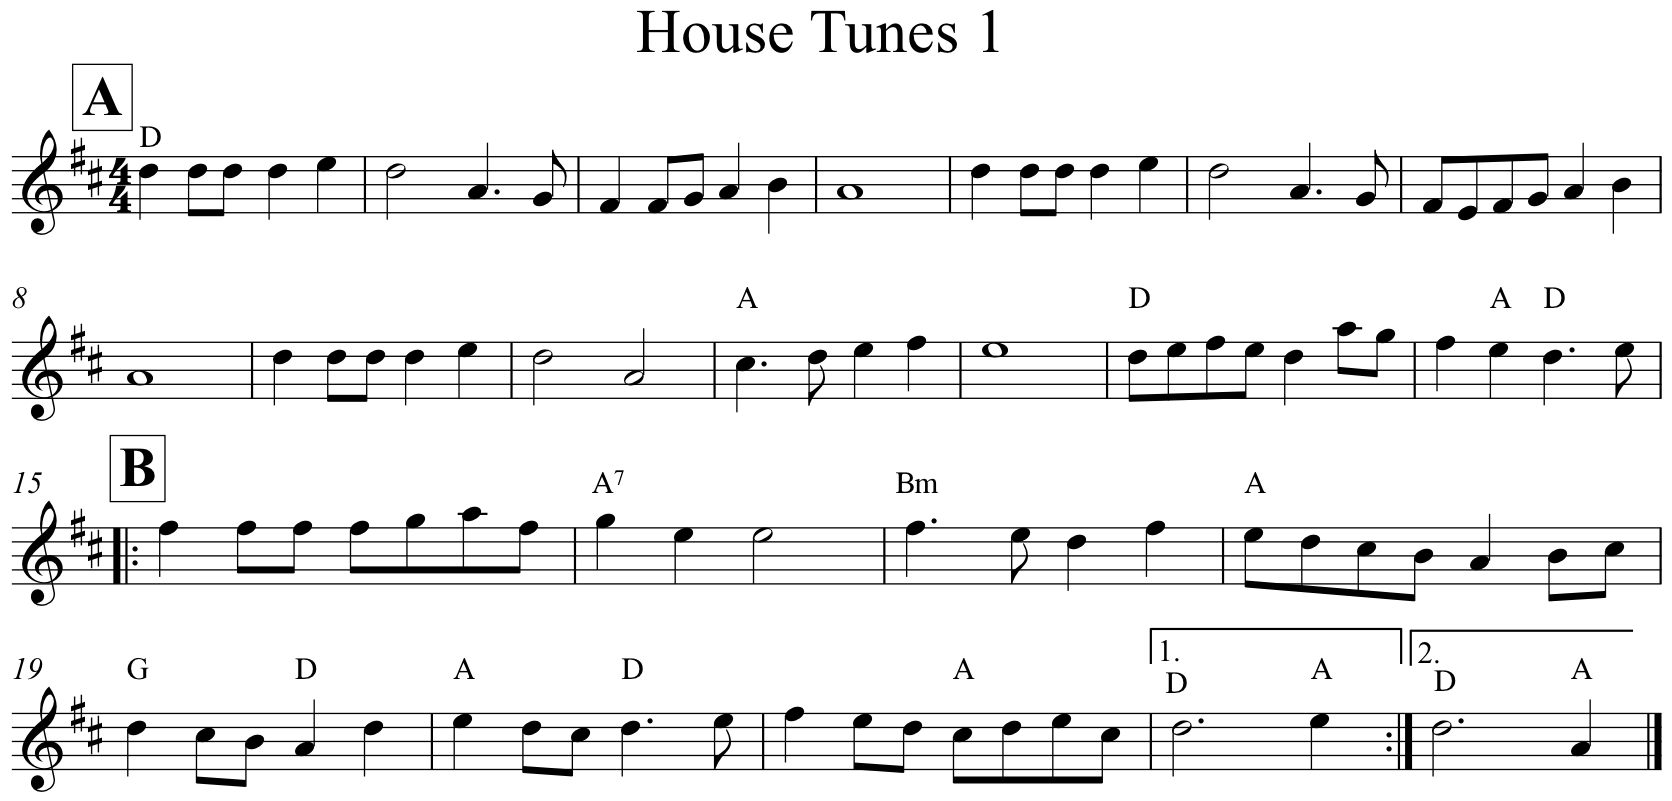 House Tunes 1